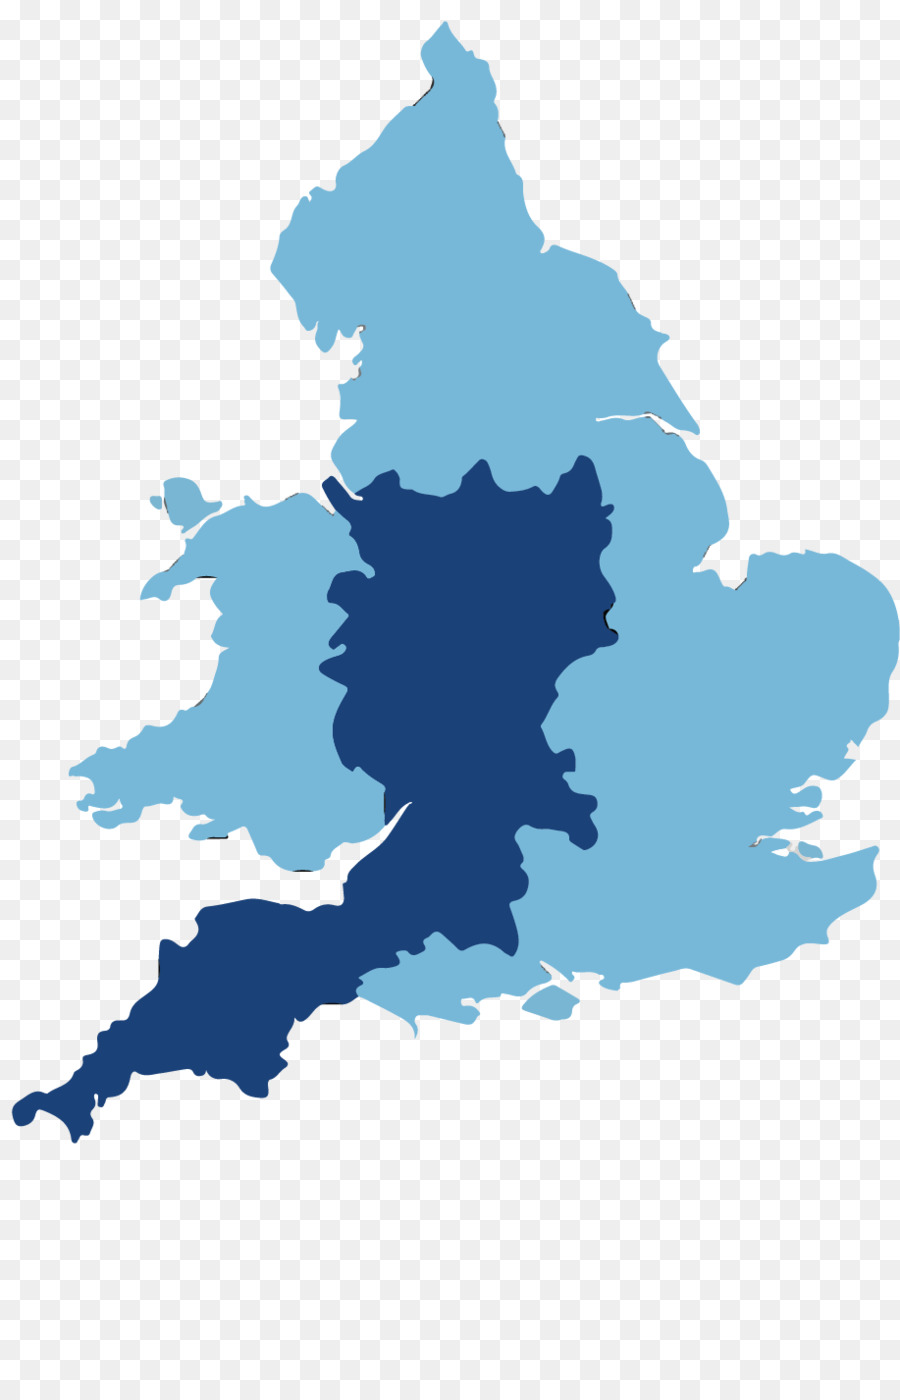 Isole britanniche Inghilterra grafica Vettoriale mappa Vuota - bagno e north east somerset